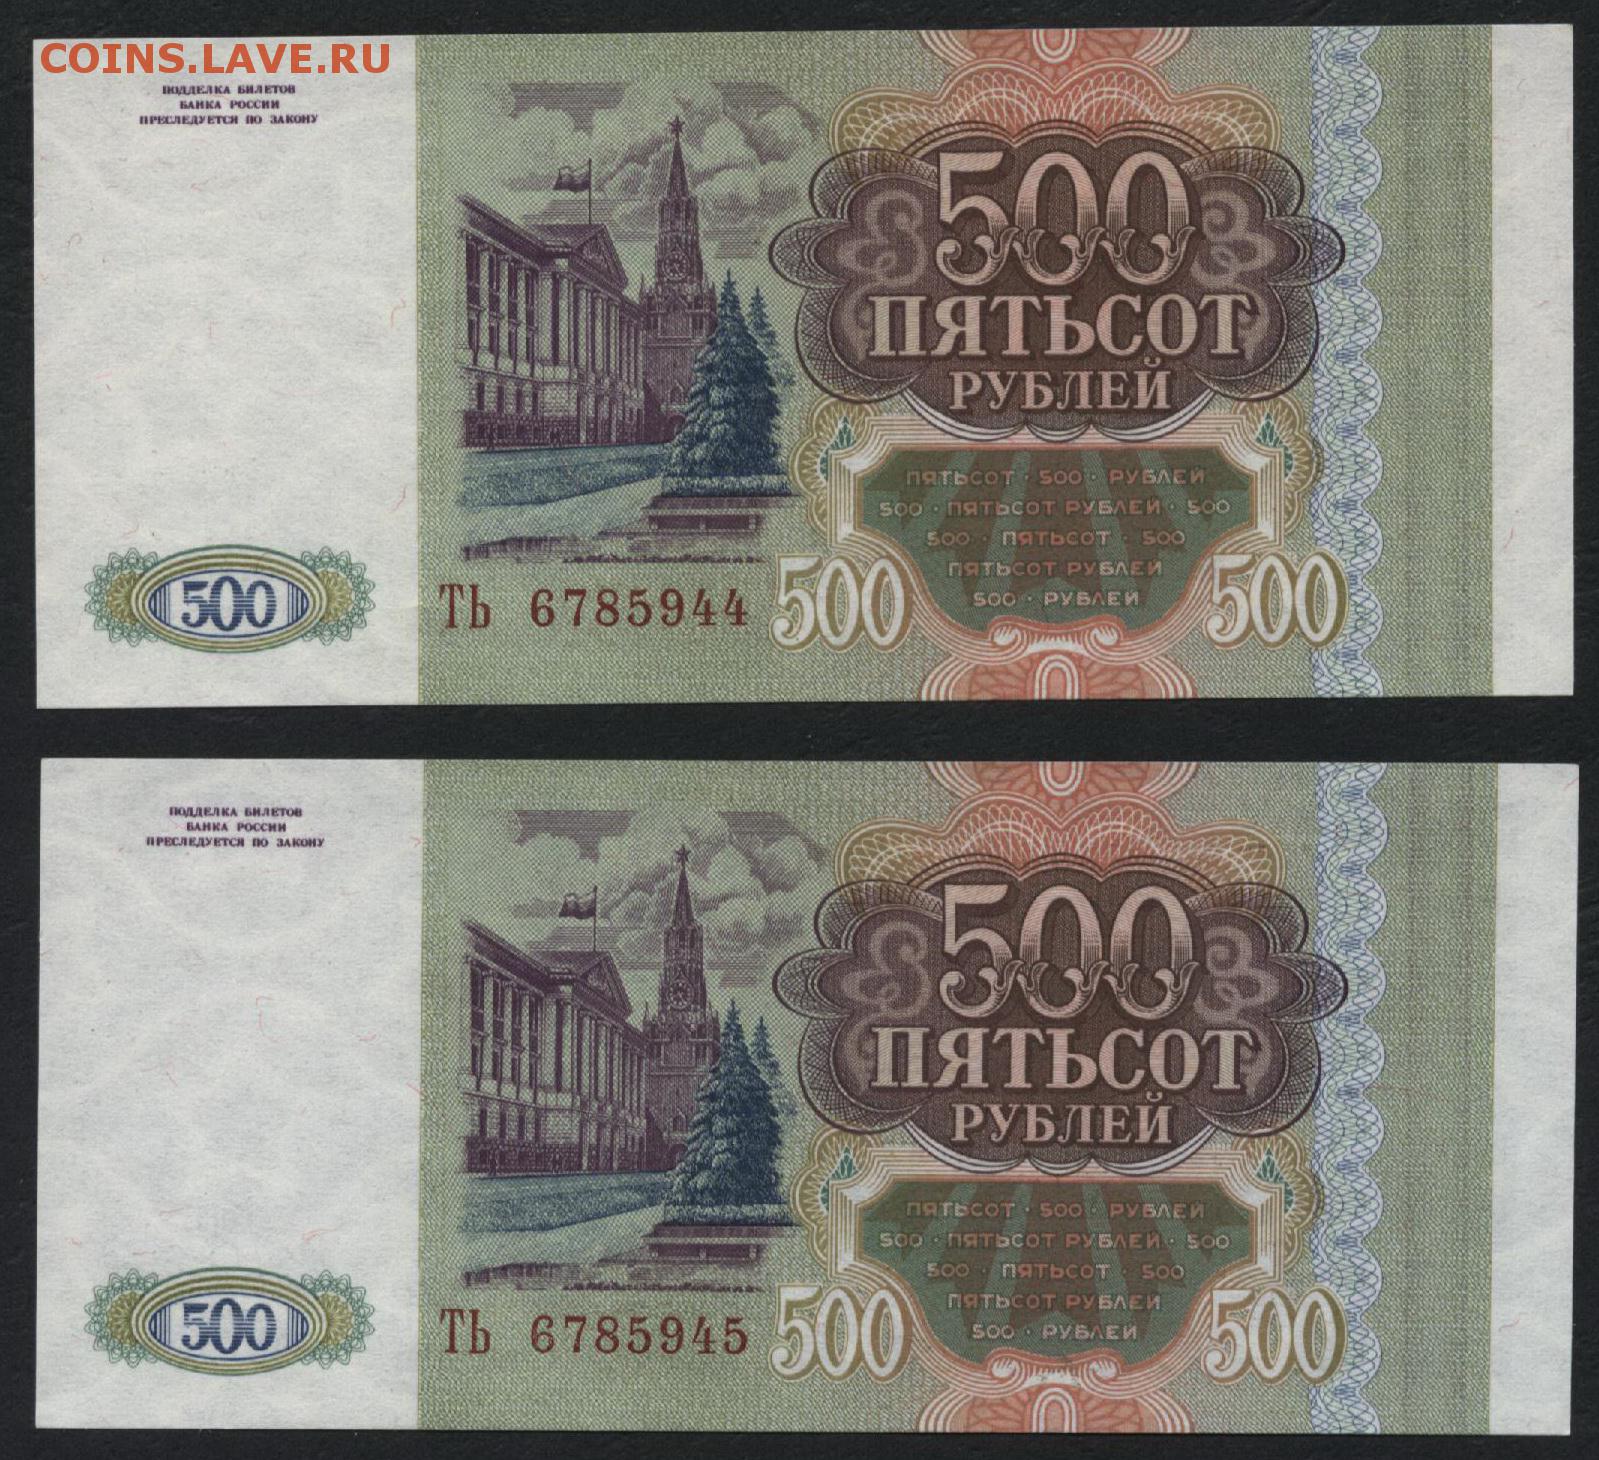 Пятьсот пять рублей. 500 Рублей. 500 Рублей 1993. Пятьсот рублей 1993. 500 Рублей 1993 года.